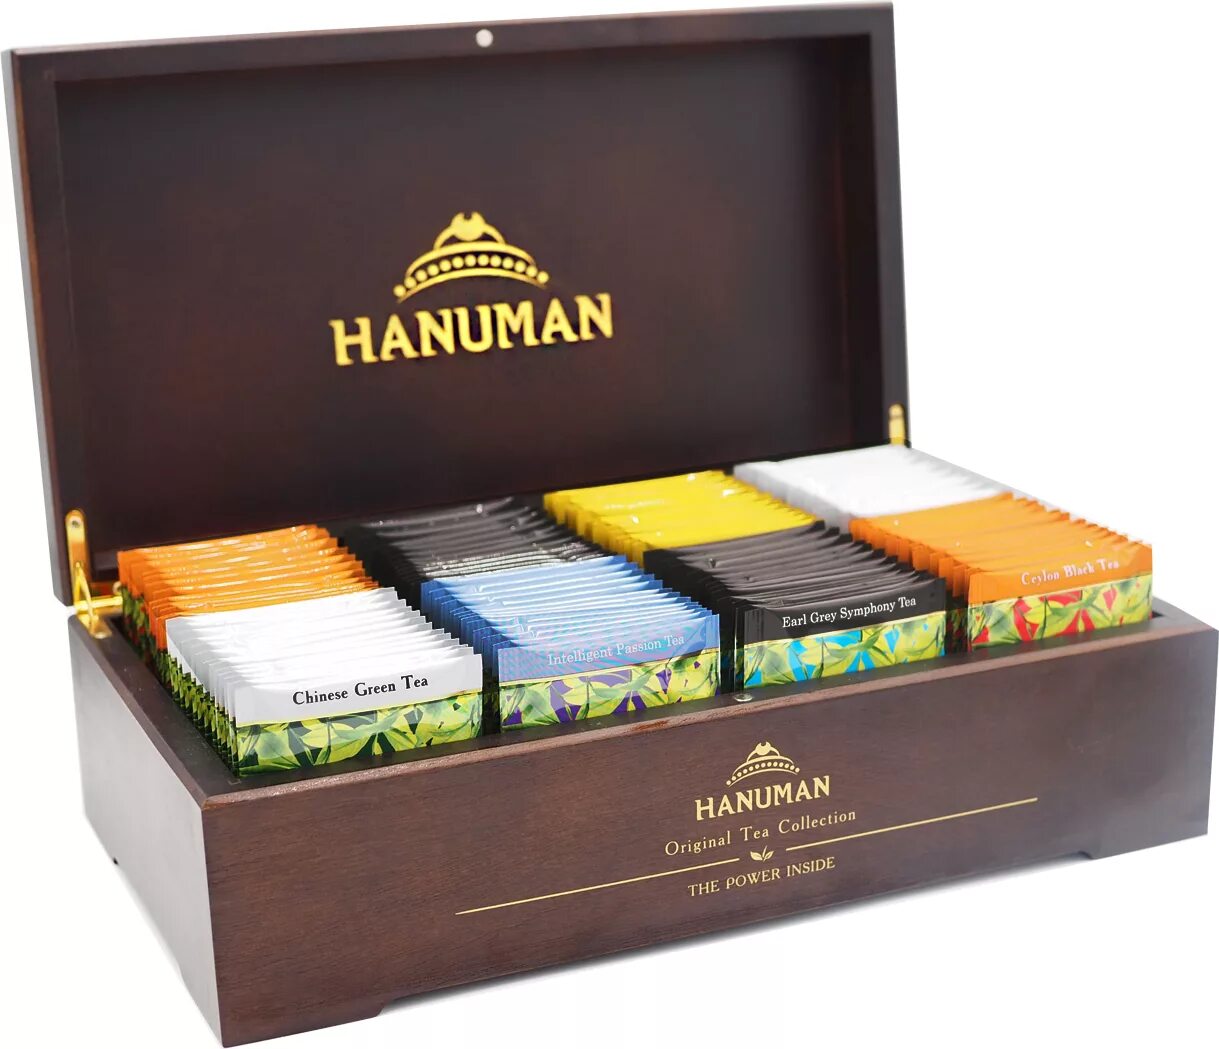 Hanuman чай в шкатулке. Чай Хануман в пакетиках. Подарочный набор чая Hanuman. Чай Hanuman в деревянной шкатулке. Купить чай набор в пакетиках